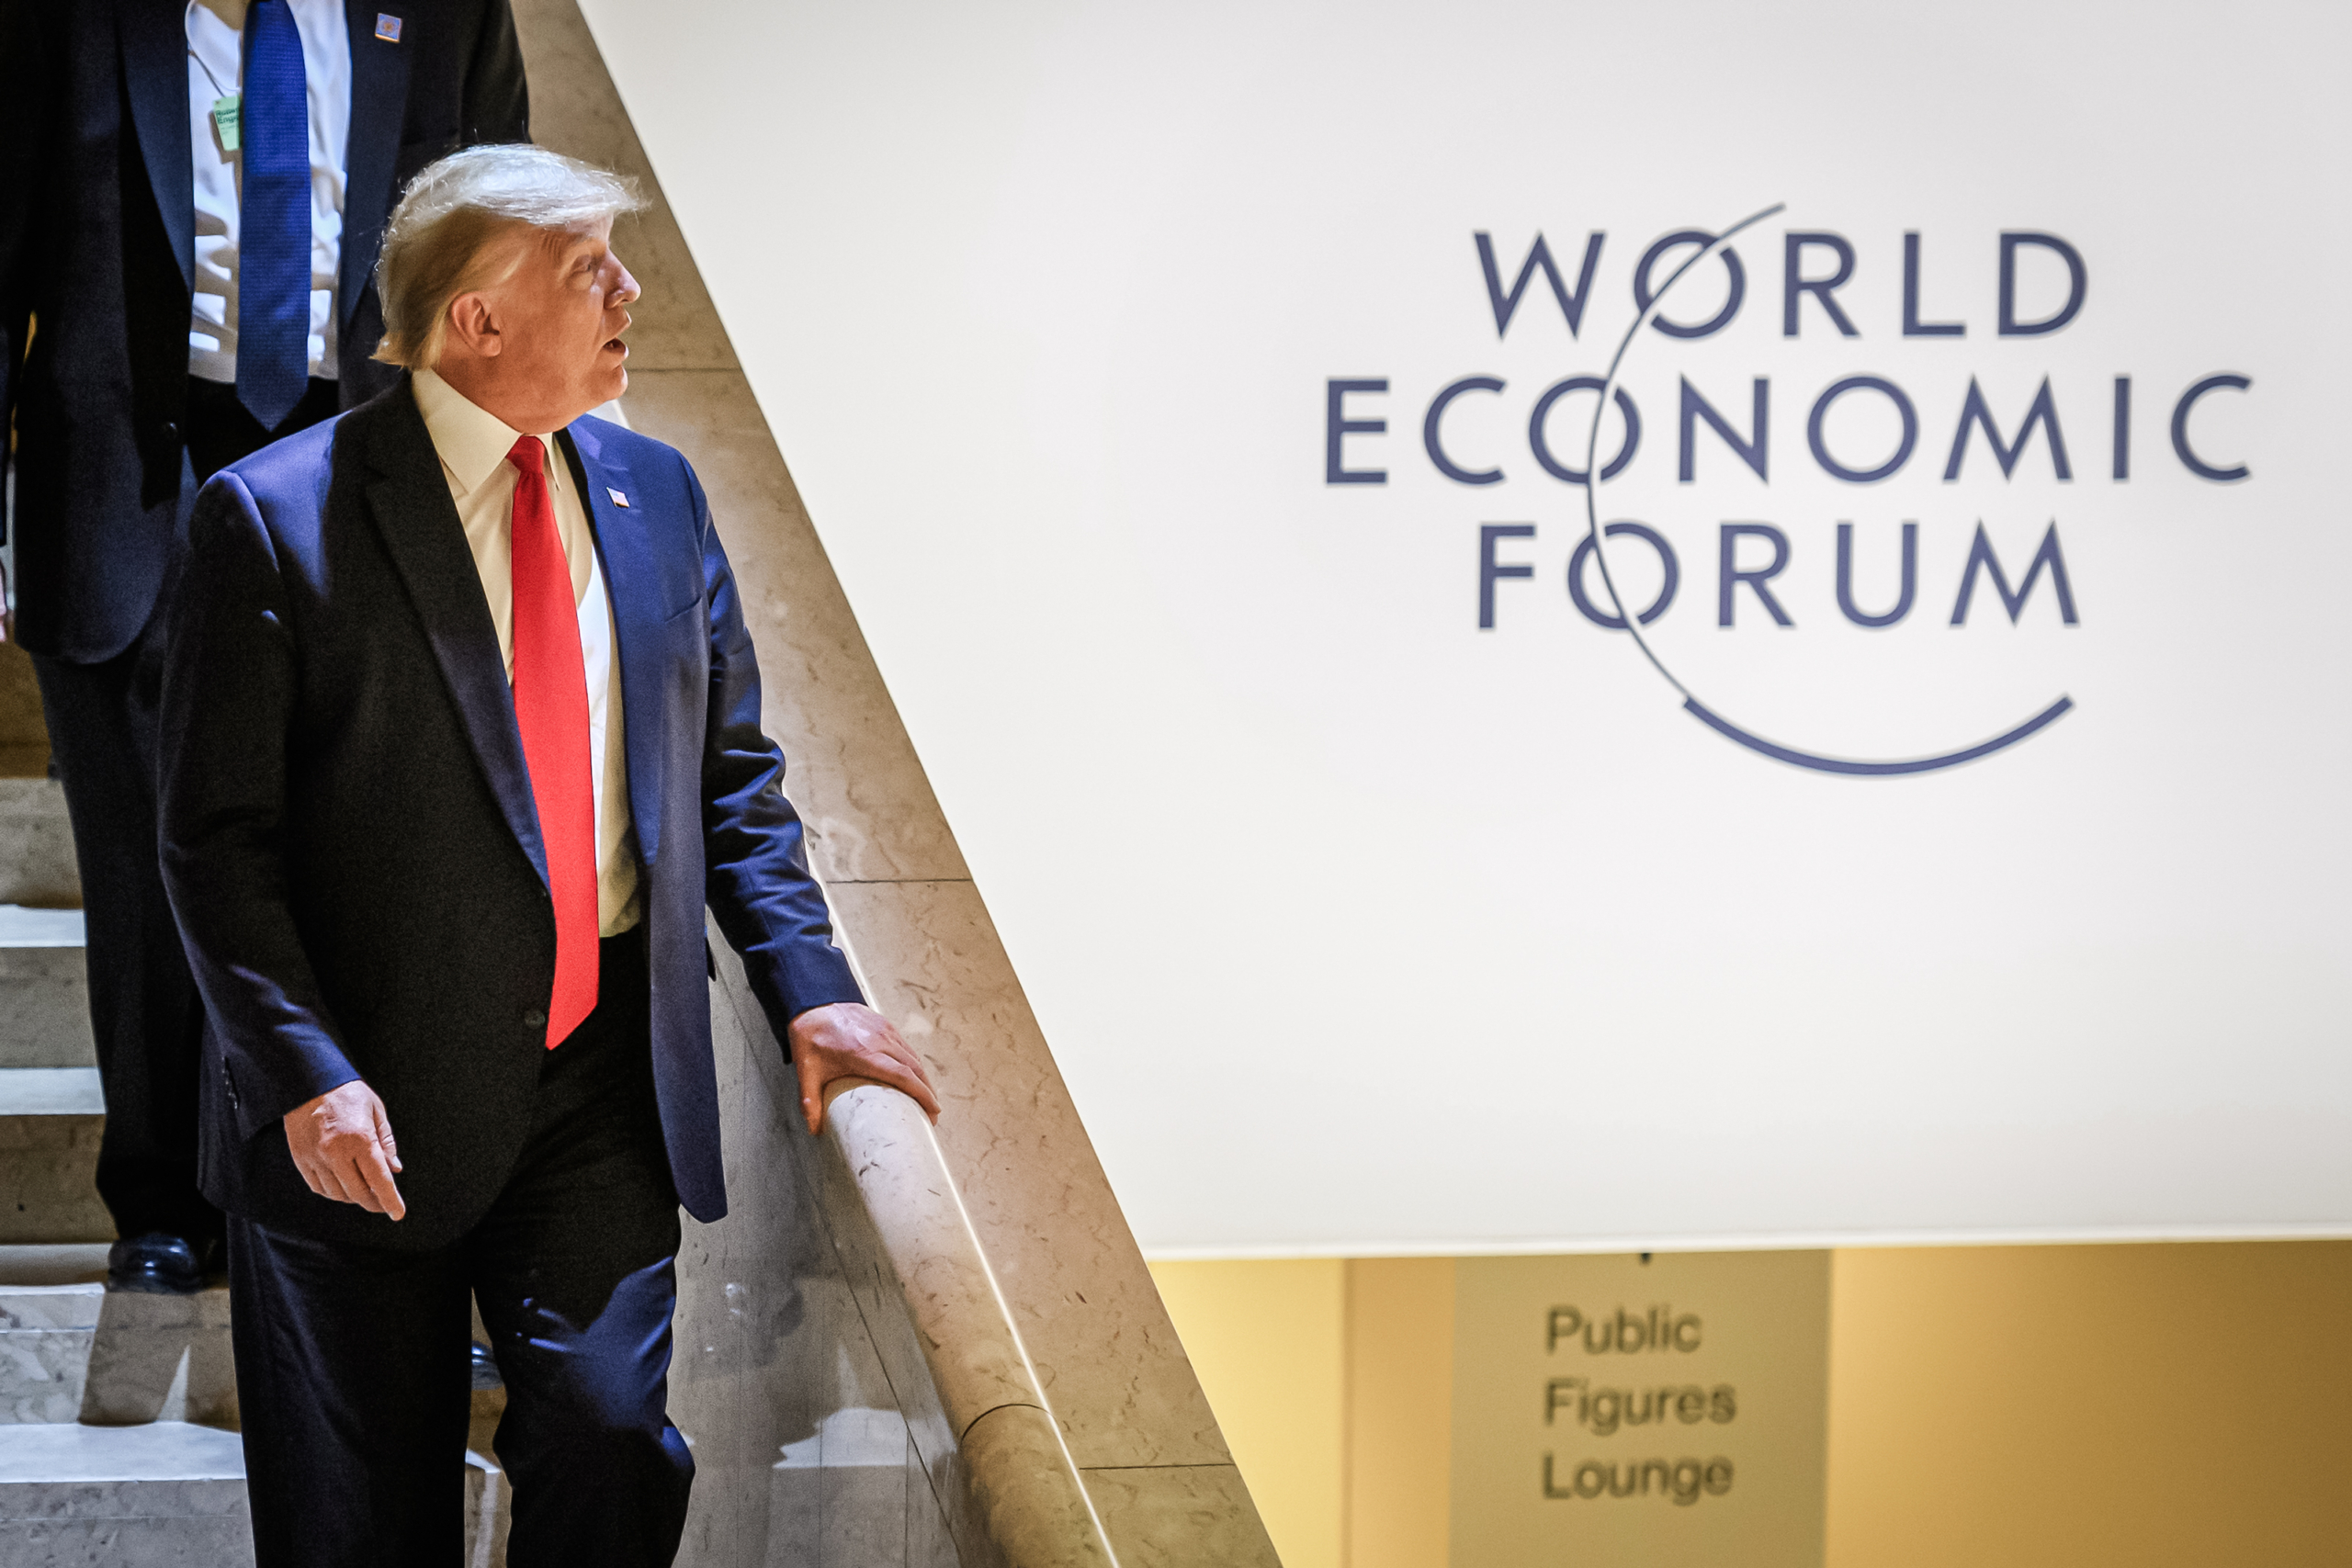 Tổng thống đương thời Donald Trump rời Trung tâm Hội nghị trong cuộc họp thường niên của Diễn đàn Kinh tế Thế giới ở Davos hôm 21/01/2020. (Ảnh: Fabrice Coffrini/AFP qua Getty Images)